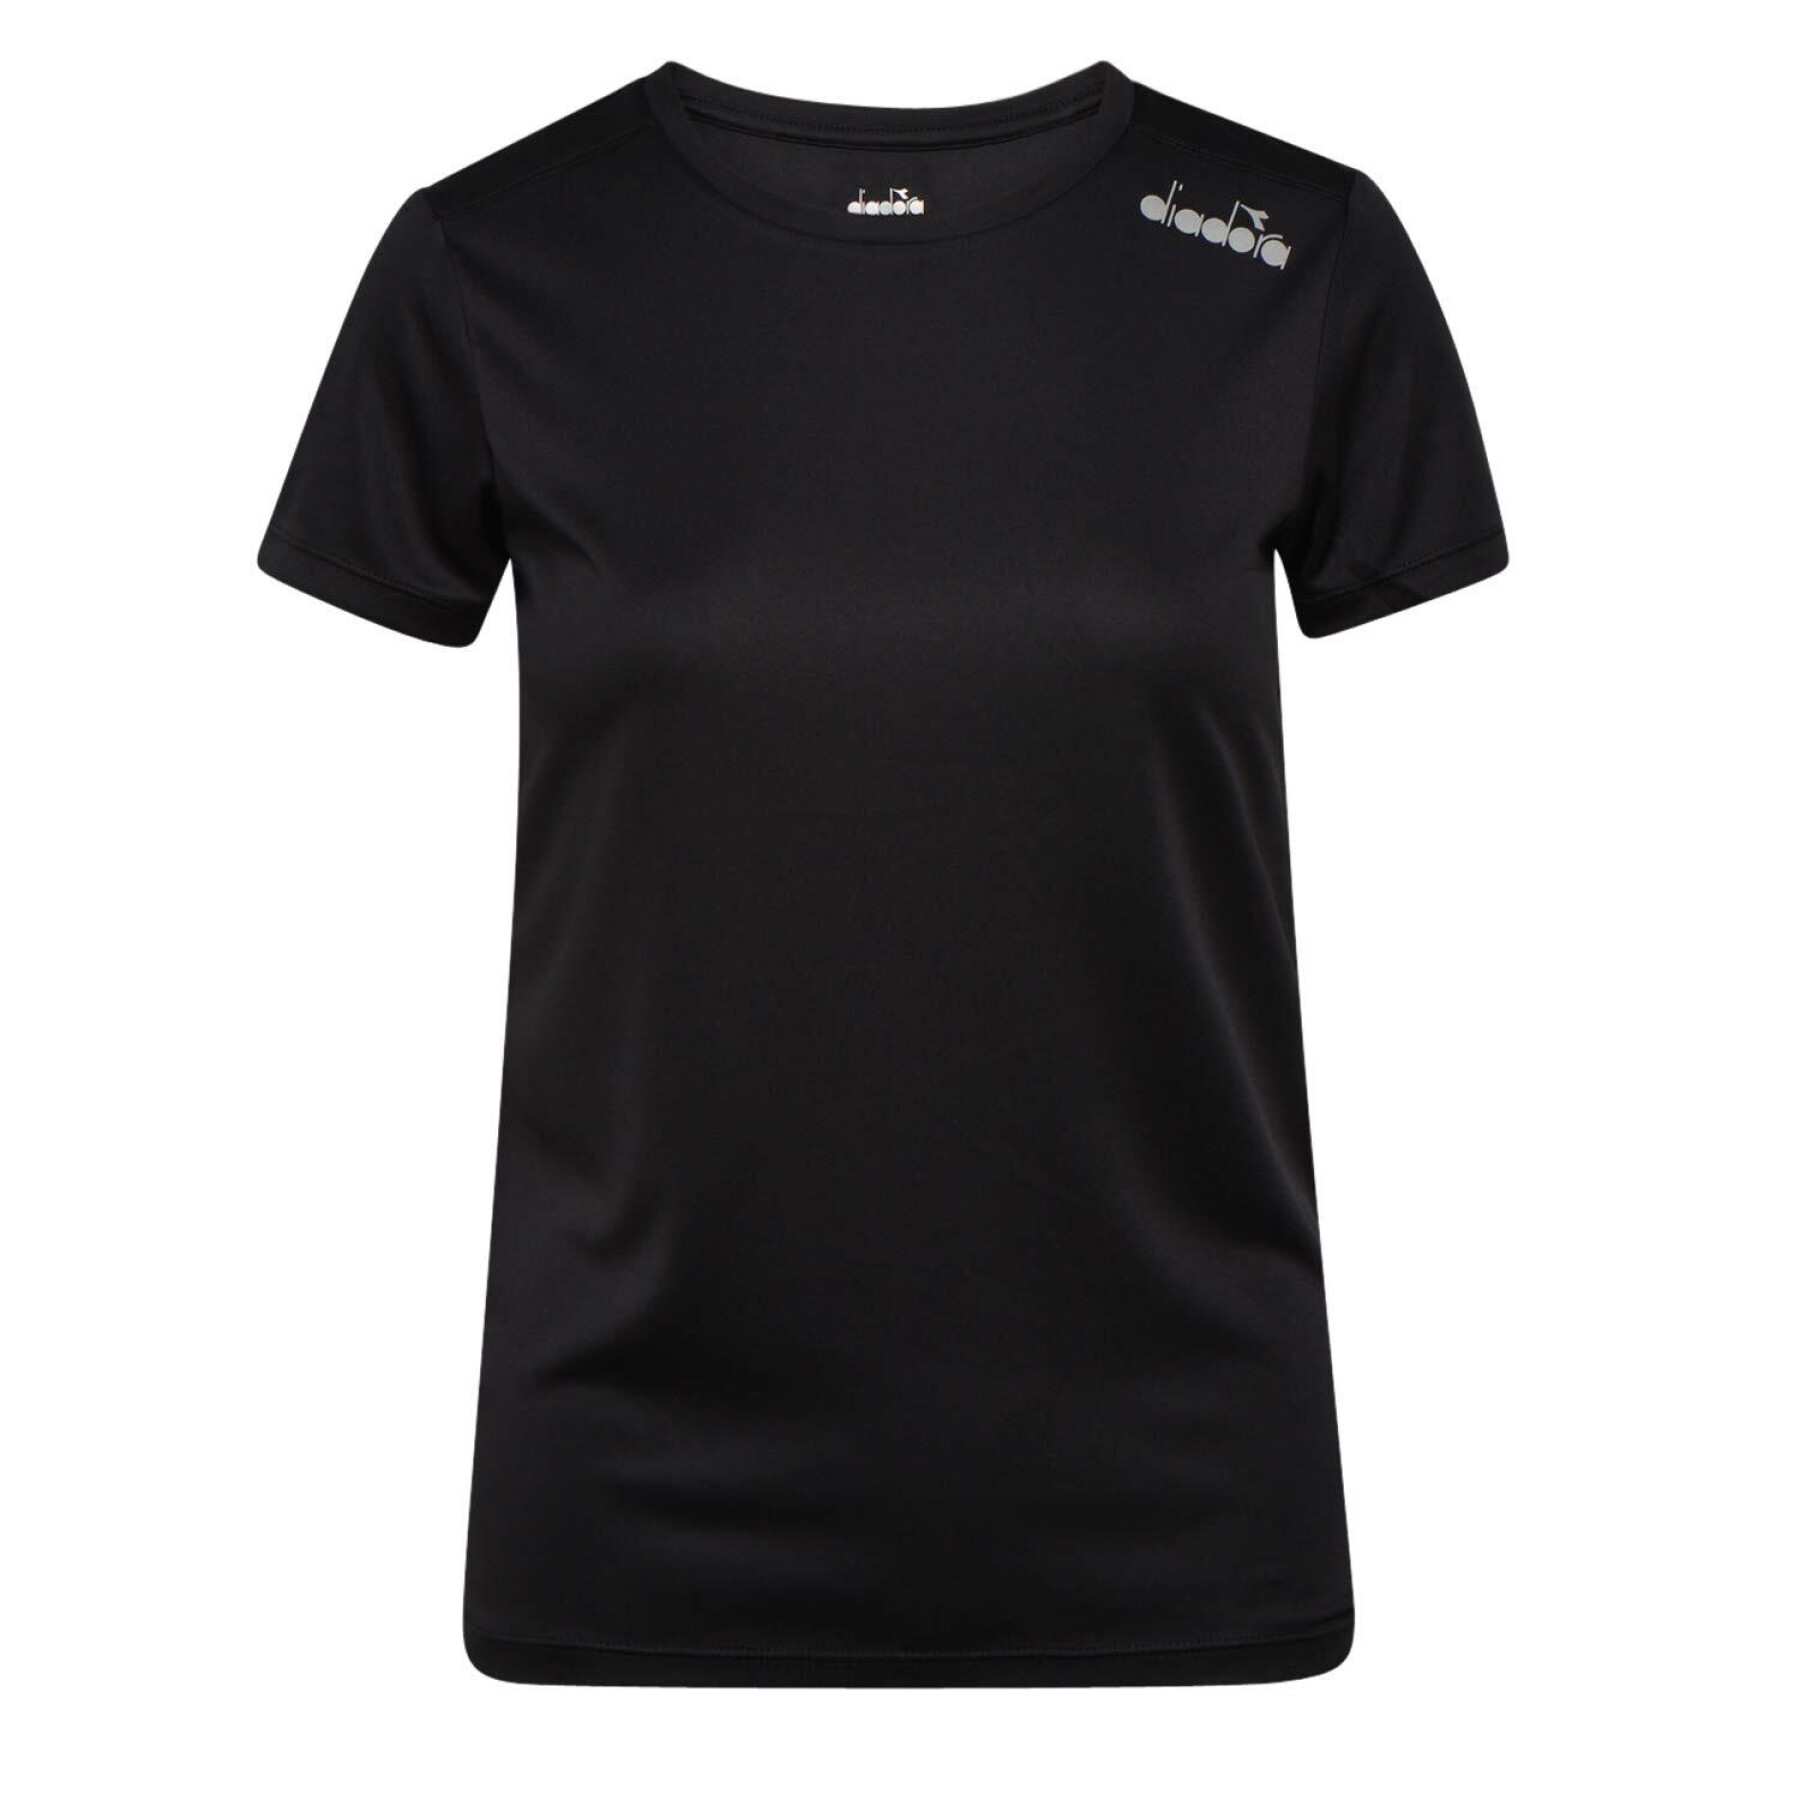 Långärmad T-shirt för kvinnor Diadora Core